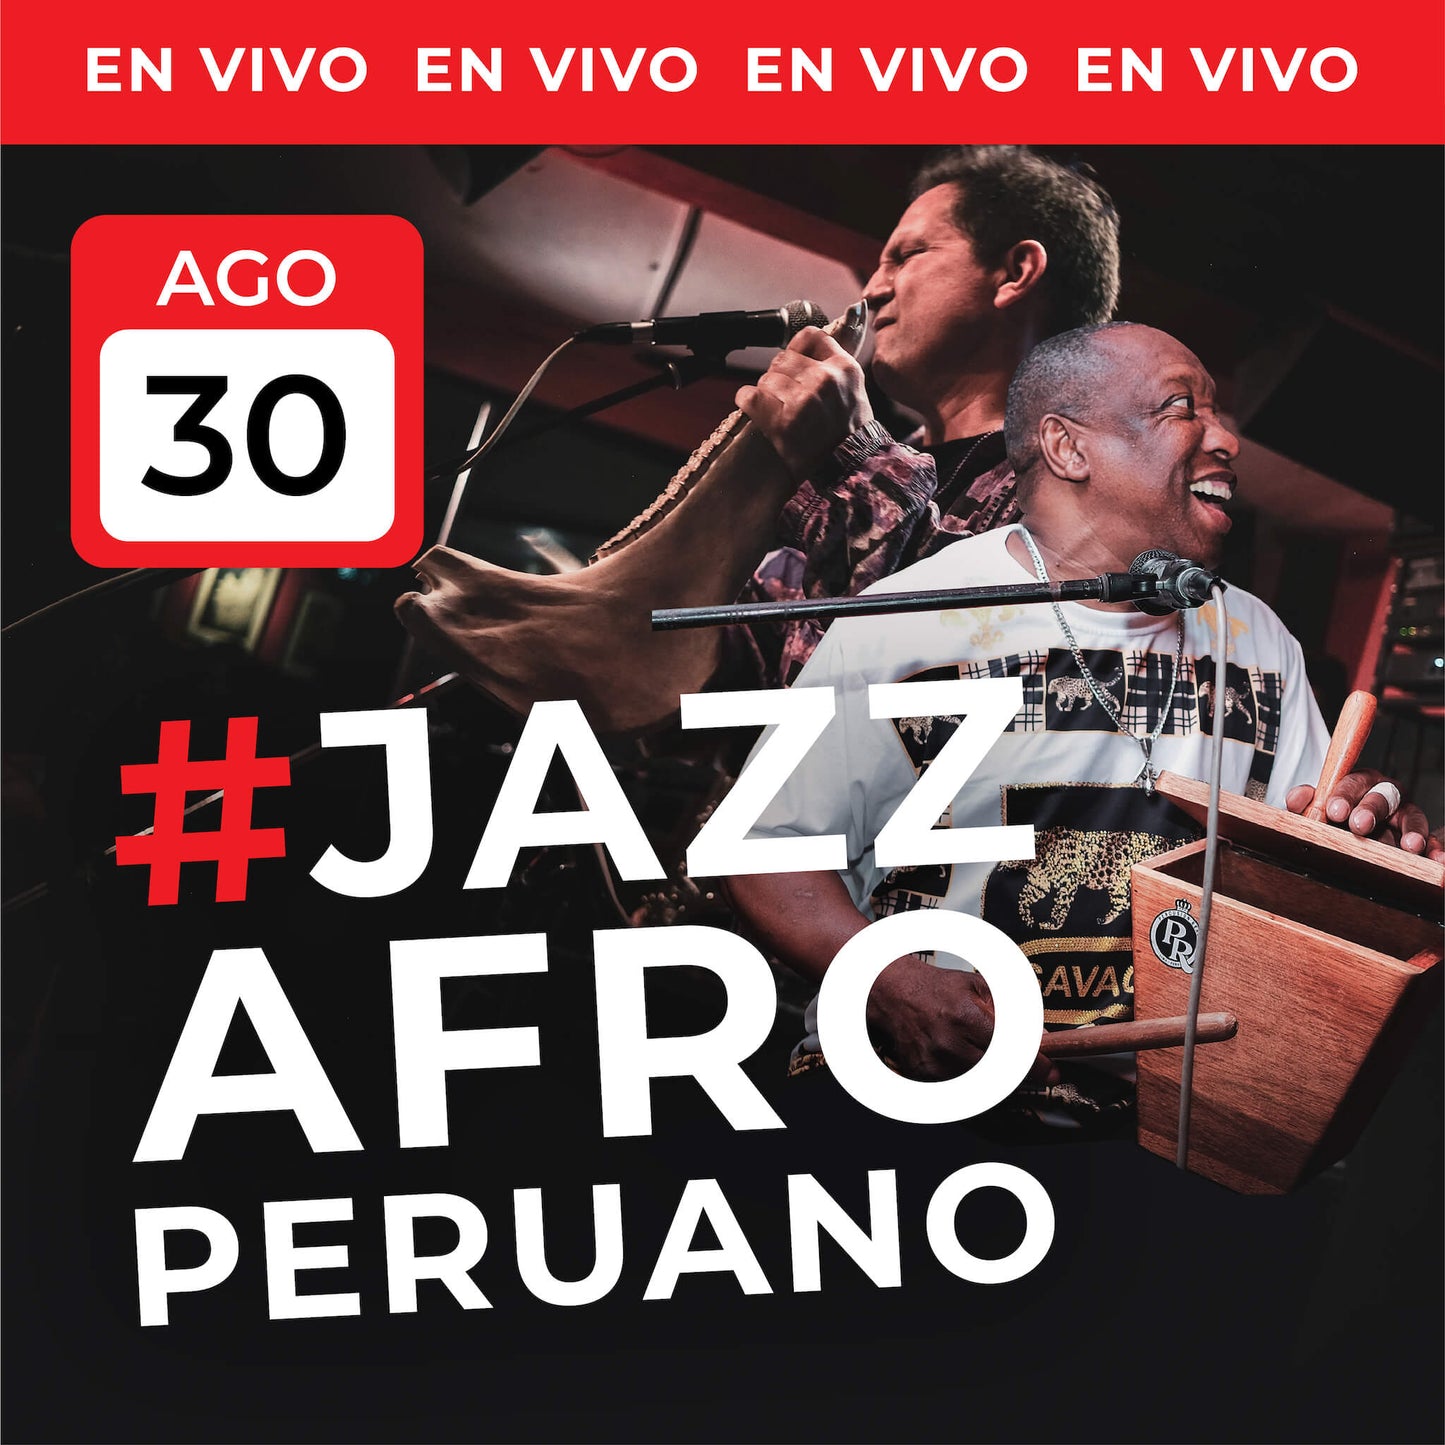 30 Ago | #JazzAfroperuano EN VIVO